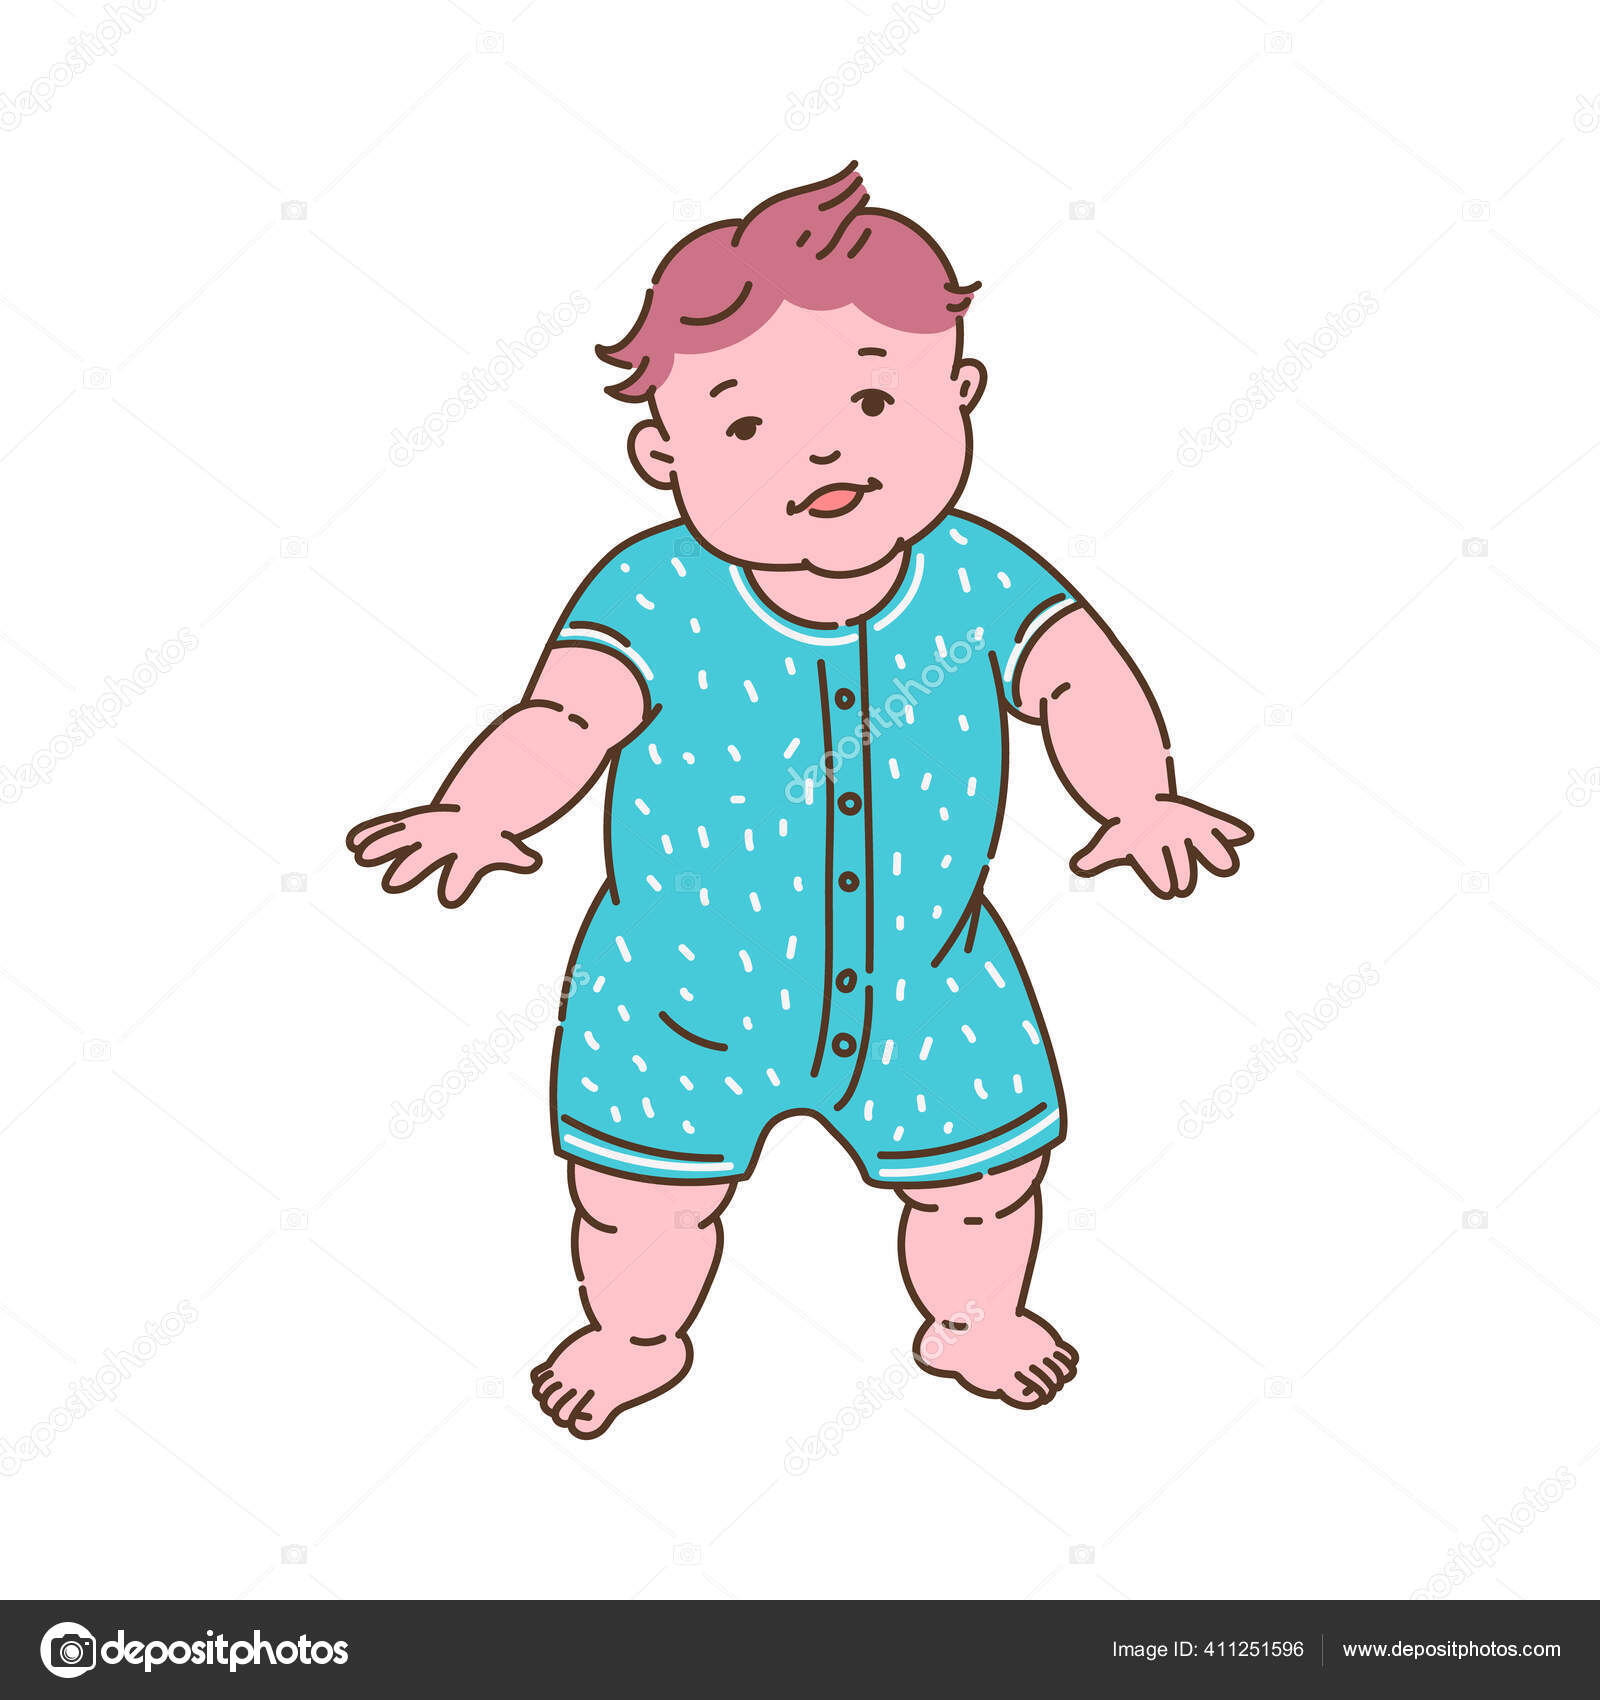 Criança no primeiro ano de vida fazendo os primeiros passos ilustração  vetorial plana isolada. imagem vetorial de Sabelskaya© 411251596